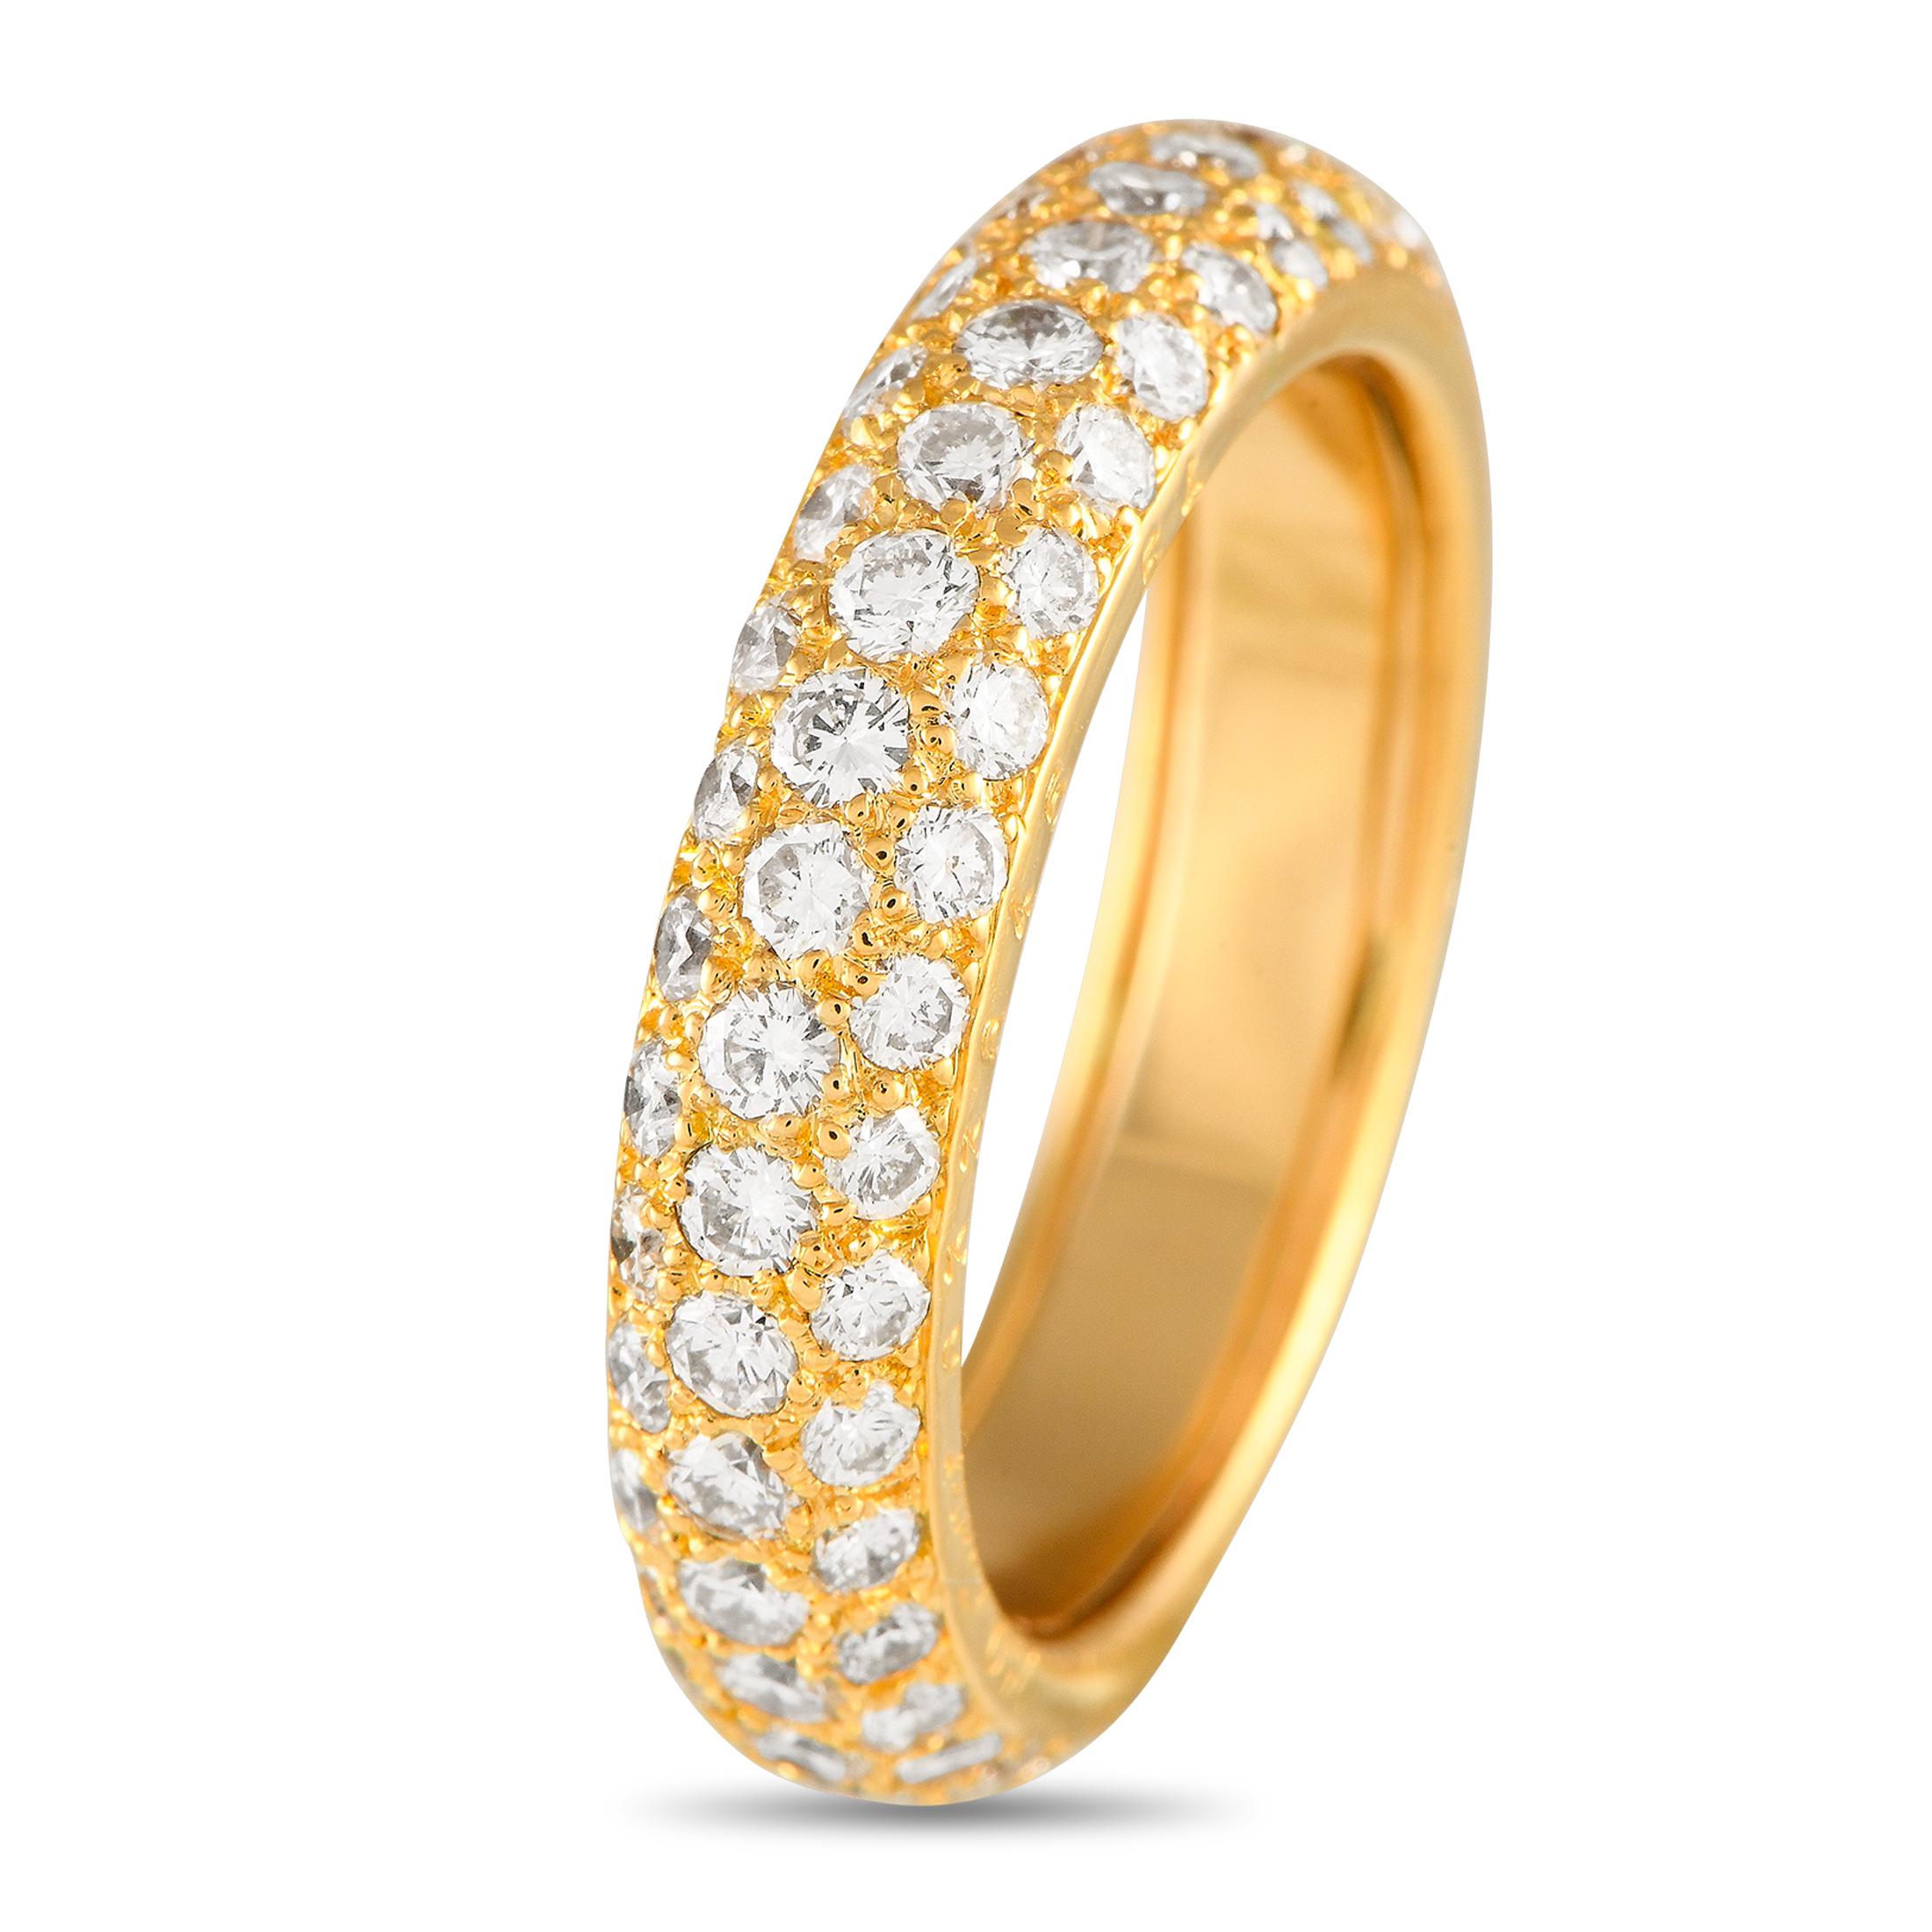 Cette bague à anneau de Cartier est simple, élégante et discrète. La monture élégante en or jaune 18 carats mesure 4 mm de large et présente une hauteur supérieure de 3 mm, ce qui la rend idéale pour un usage quotidien. Les diamants, d'un poids